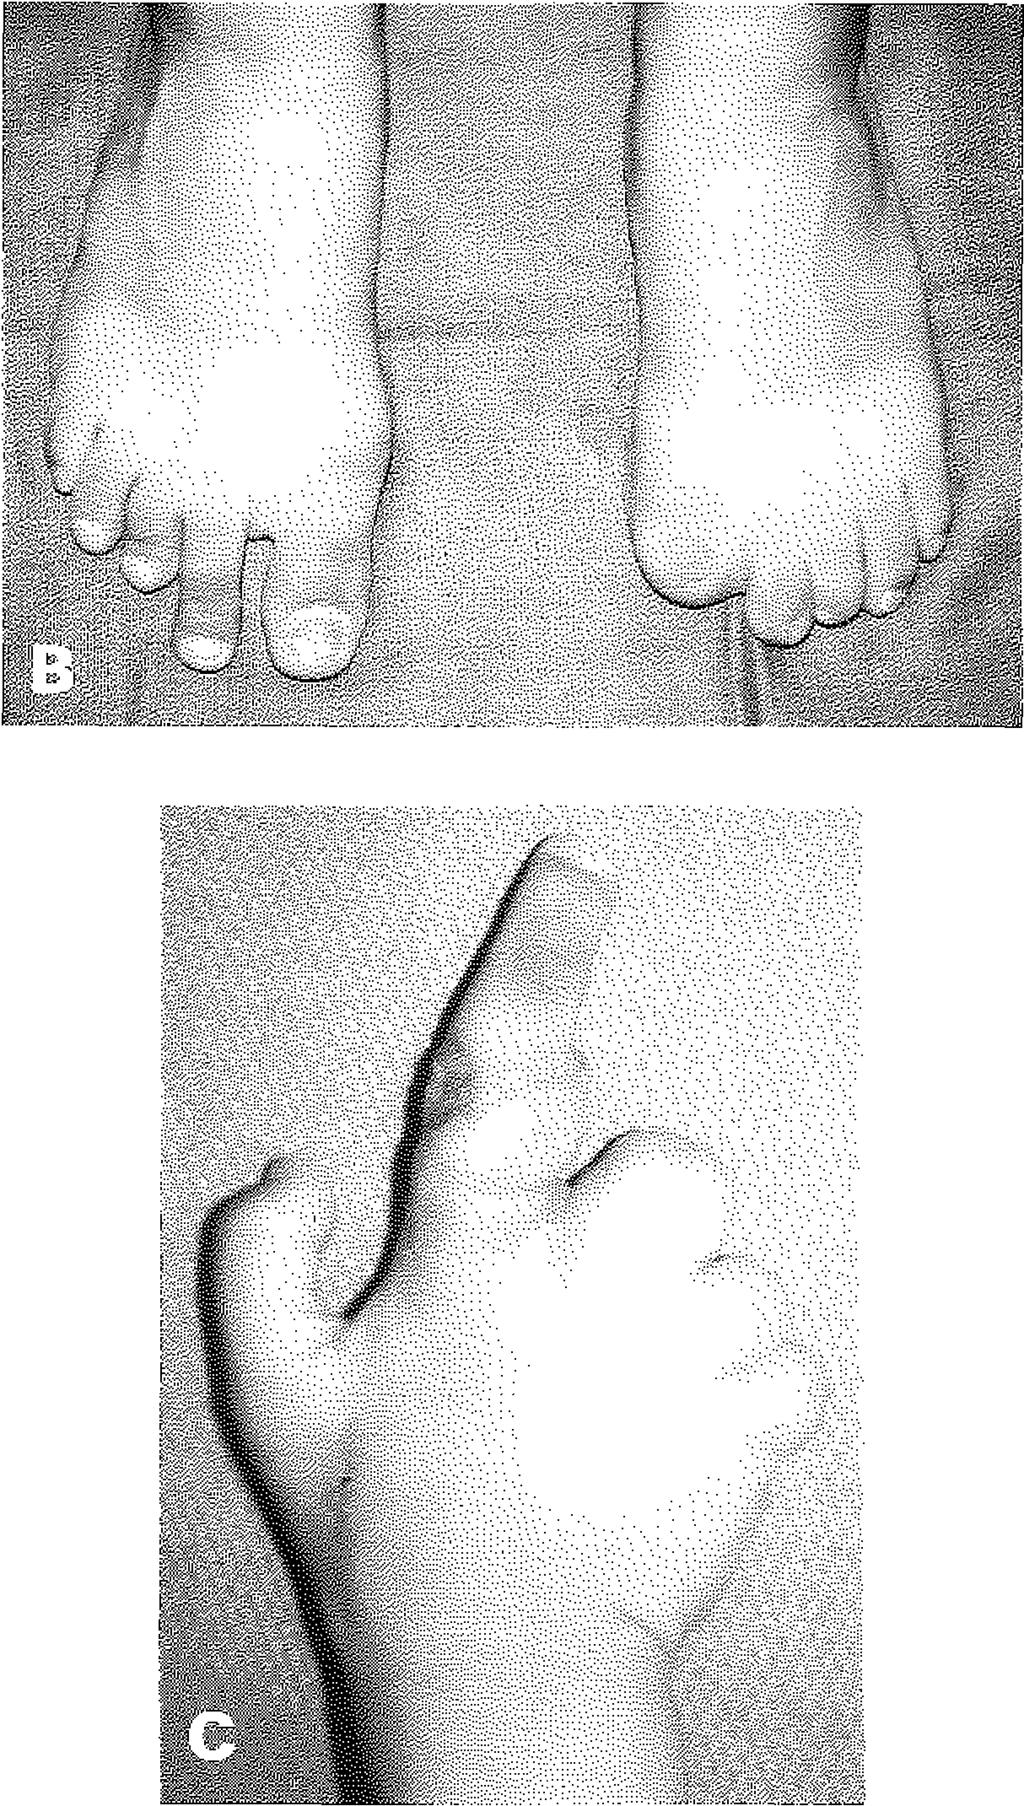 Sadece sağ ayağının 2. parmağı el parmaklarının rekonstrüksîyonu için uygun görünümde. C: Aynı olgunun el 2. parmağı onarırını için ayak 2. parmağı aktarımı yapıldıktan sonraki görünümü.